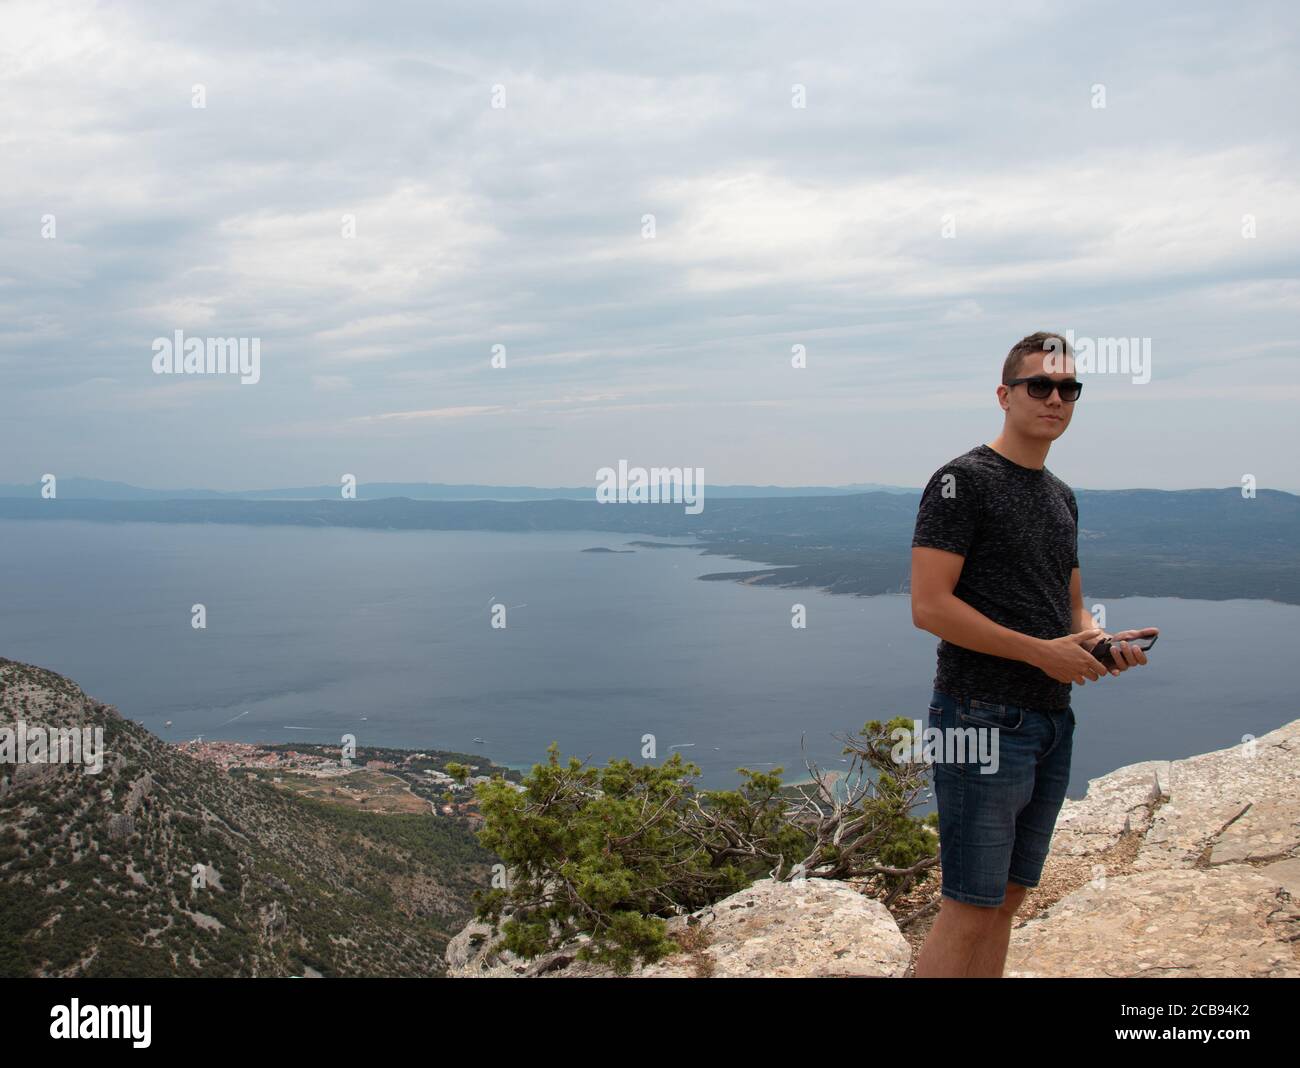 Junger erwachsener Mann, der auf dem Berg Vidova gora, dem höchsten Punkt der Insel Brac, posiert. Beliebter Ort für Touristen zum Fotografieren Stockfoto